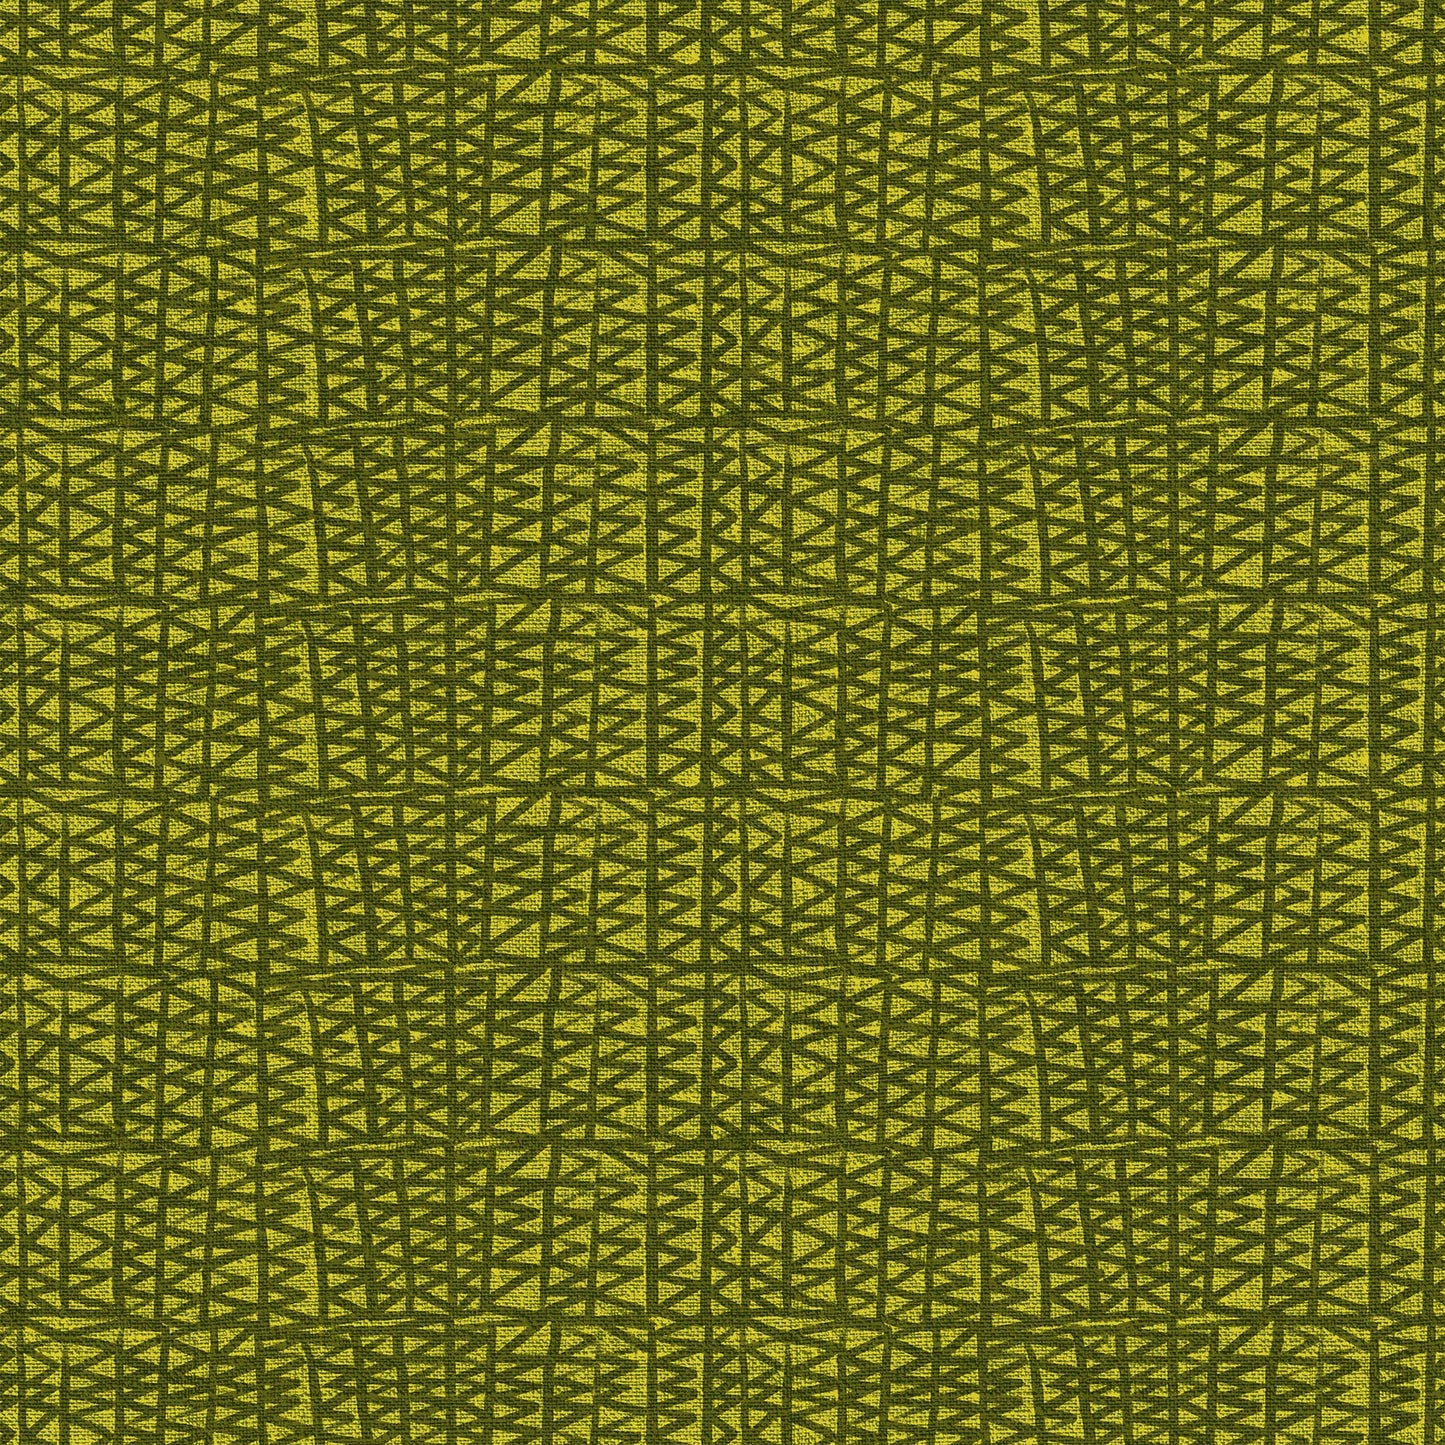 Zigzags on Green - Workshop by Libs Elliott